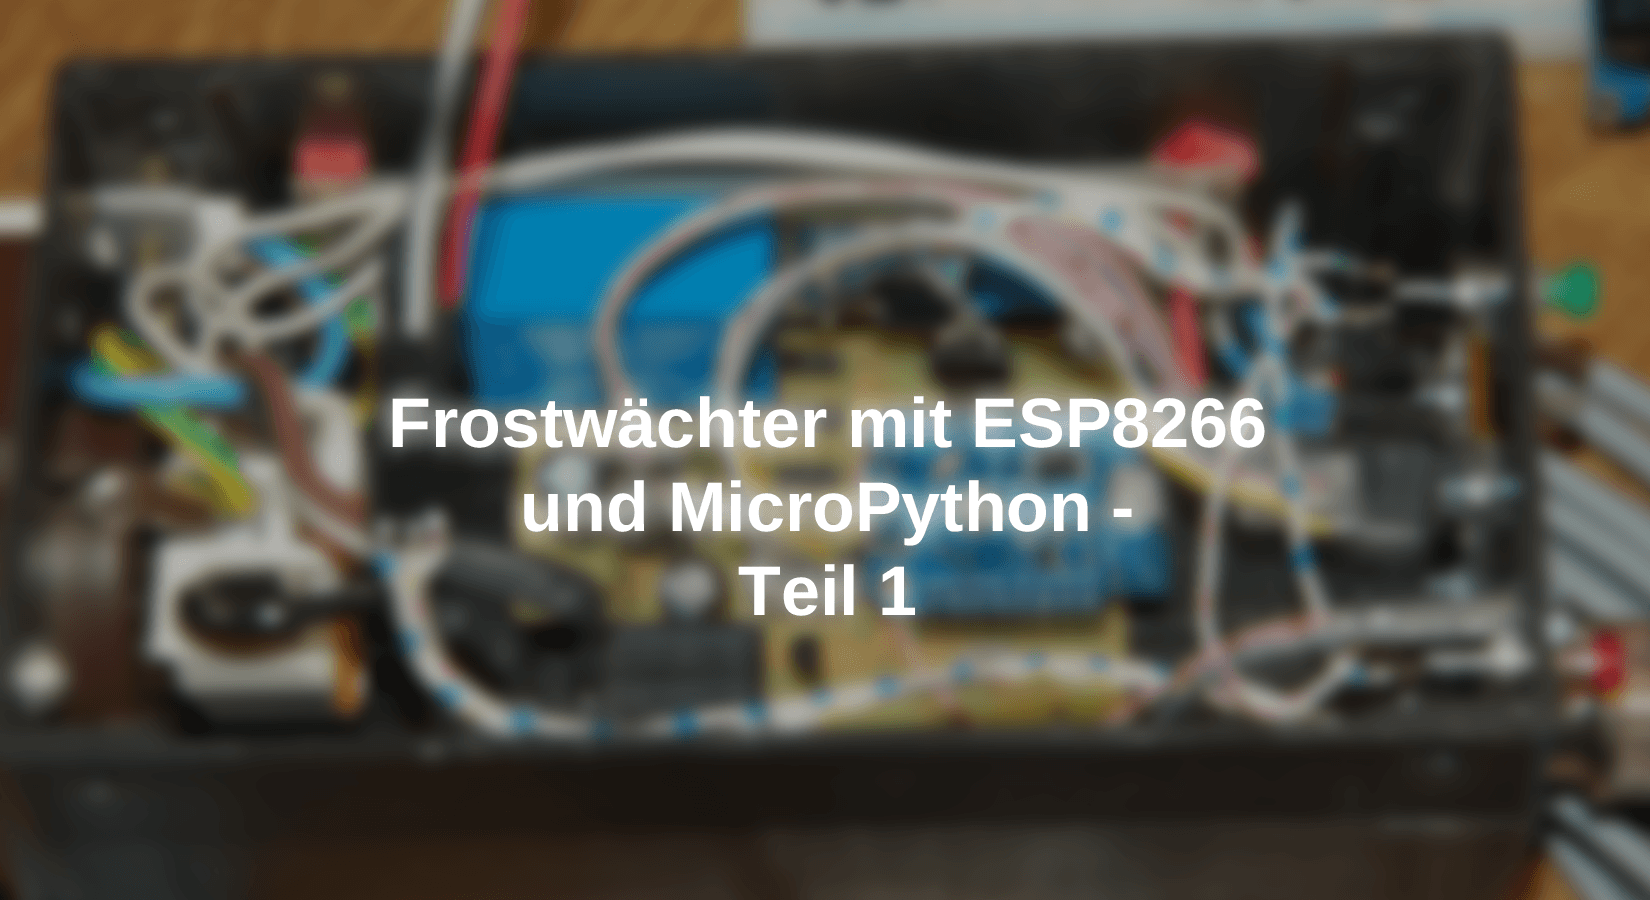 Frostwächter mit ESP8266 und MicroPython - Teil 1 - AZ-Delivery